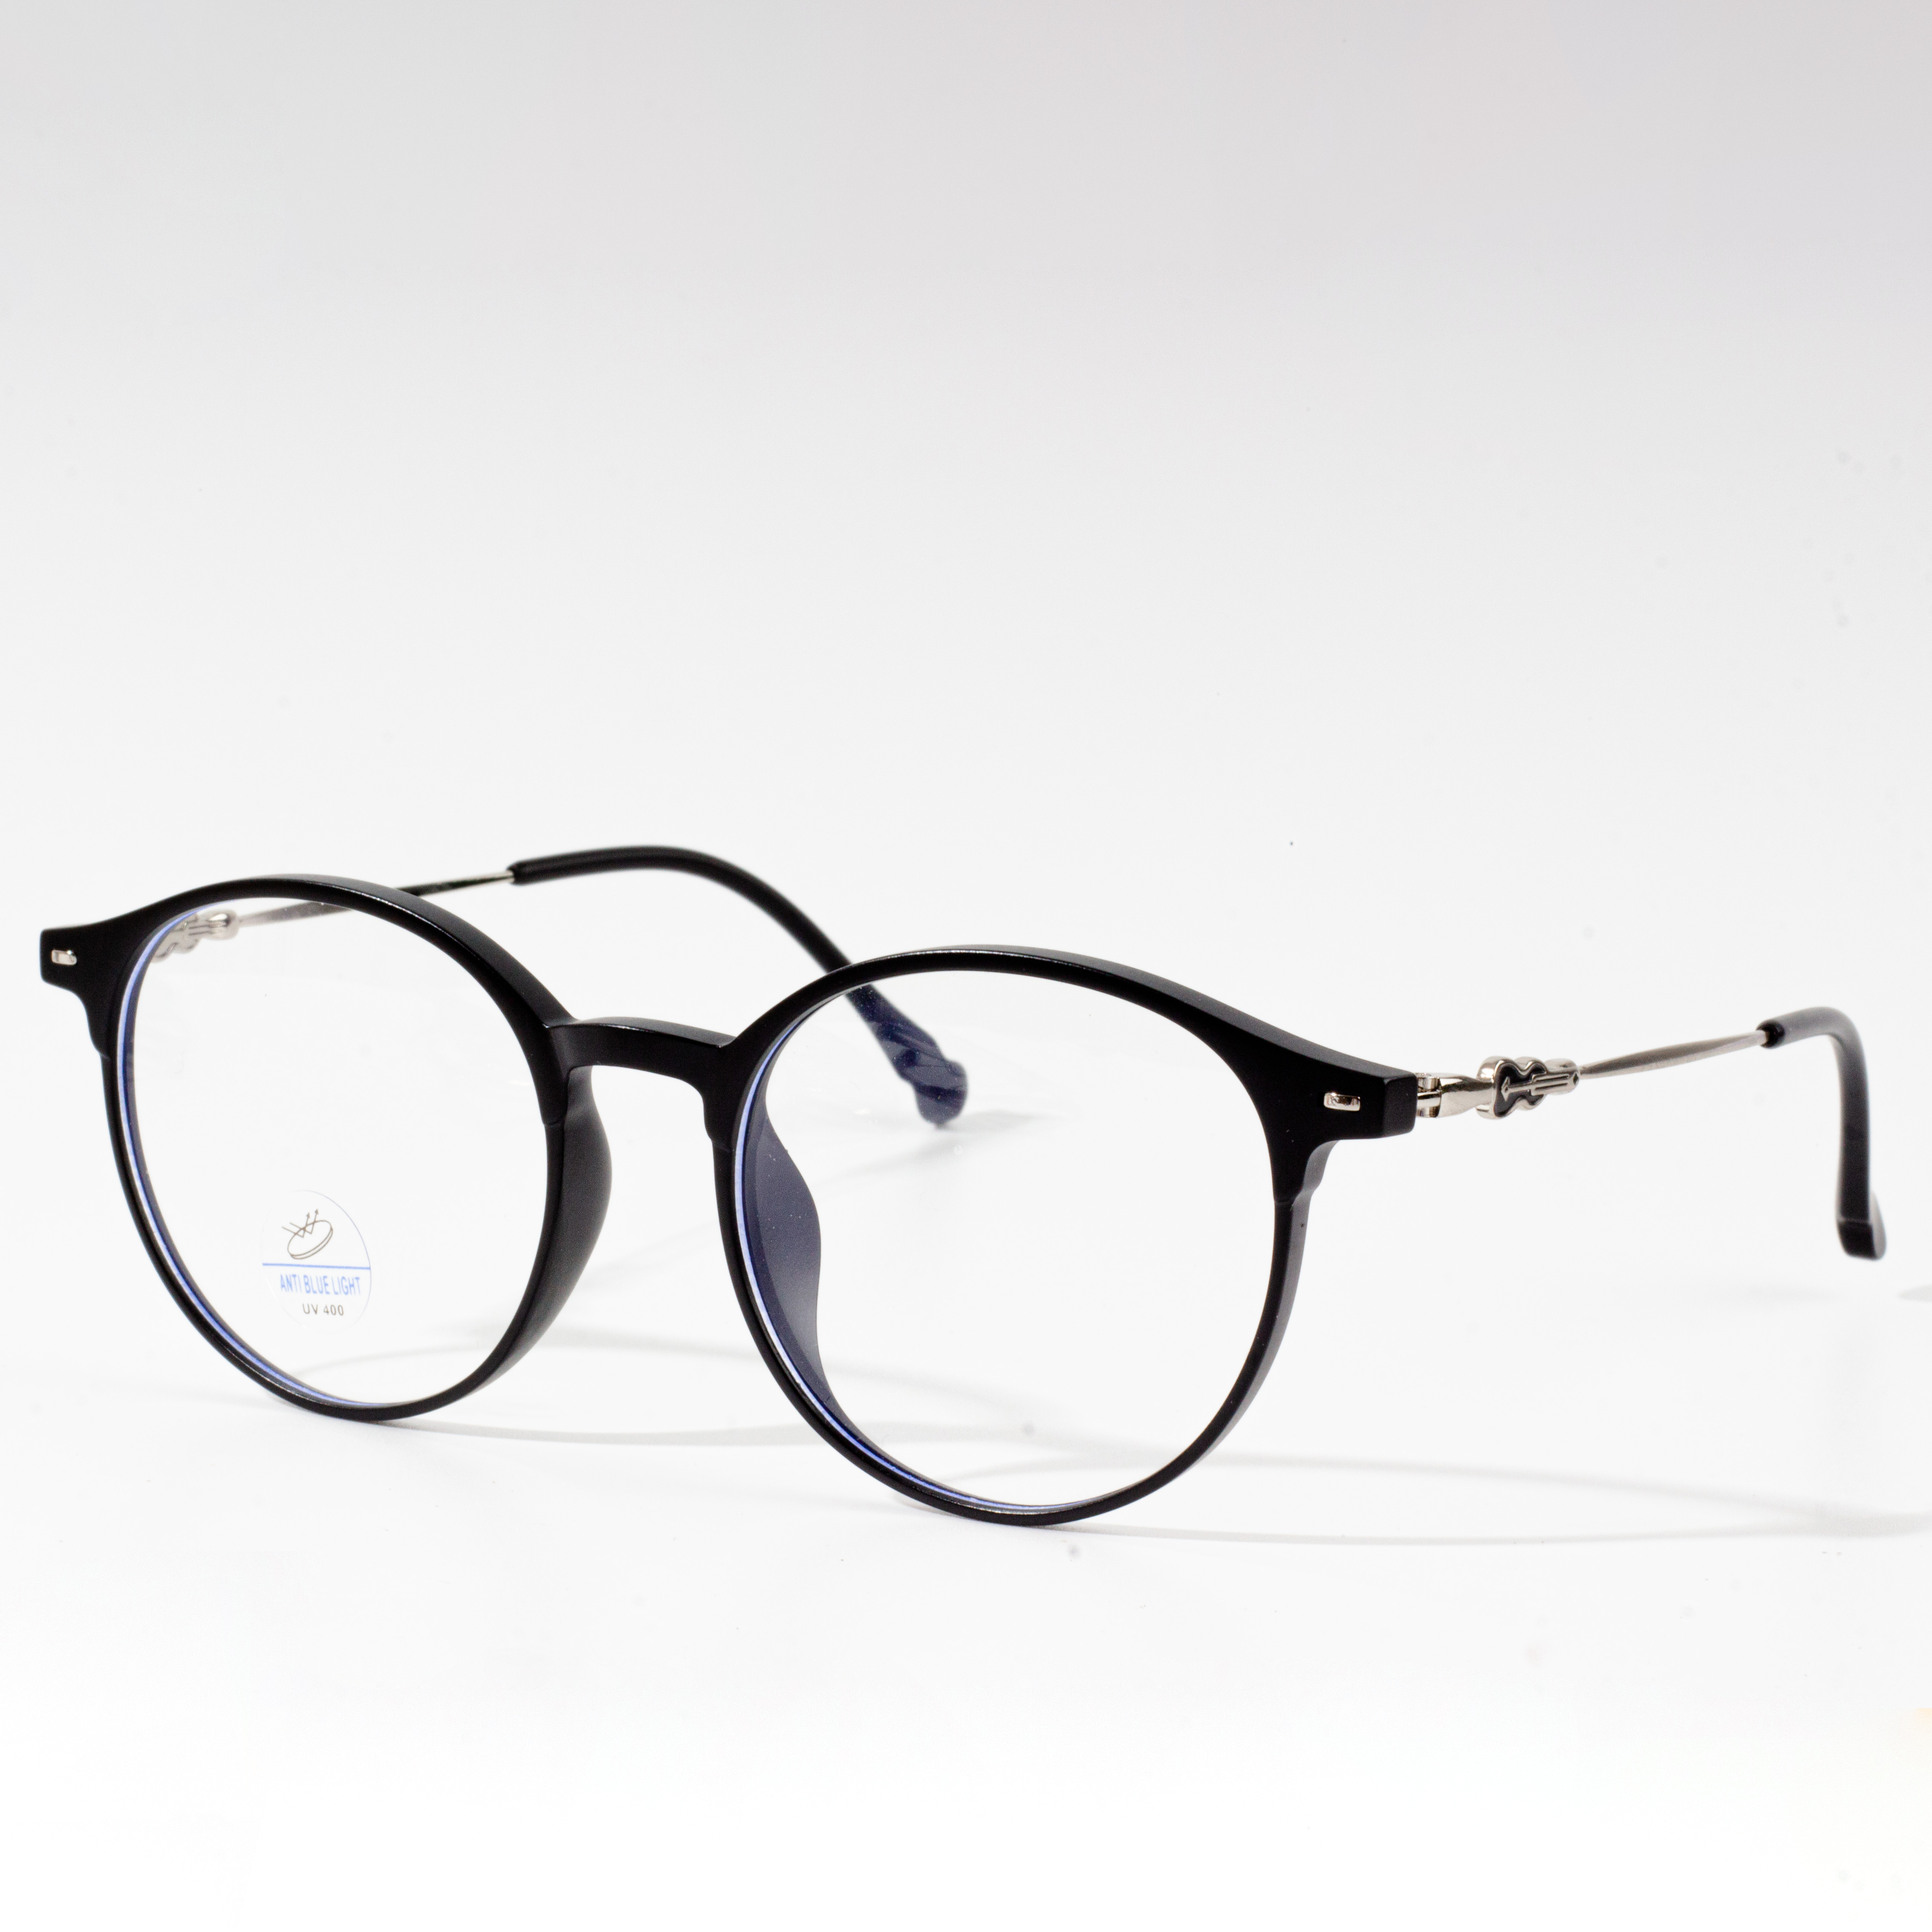 IMGdesigner womens eyeglass frames_4913